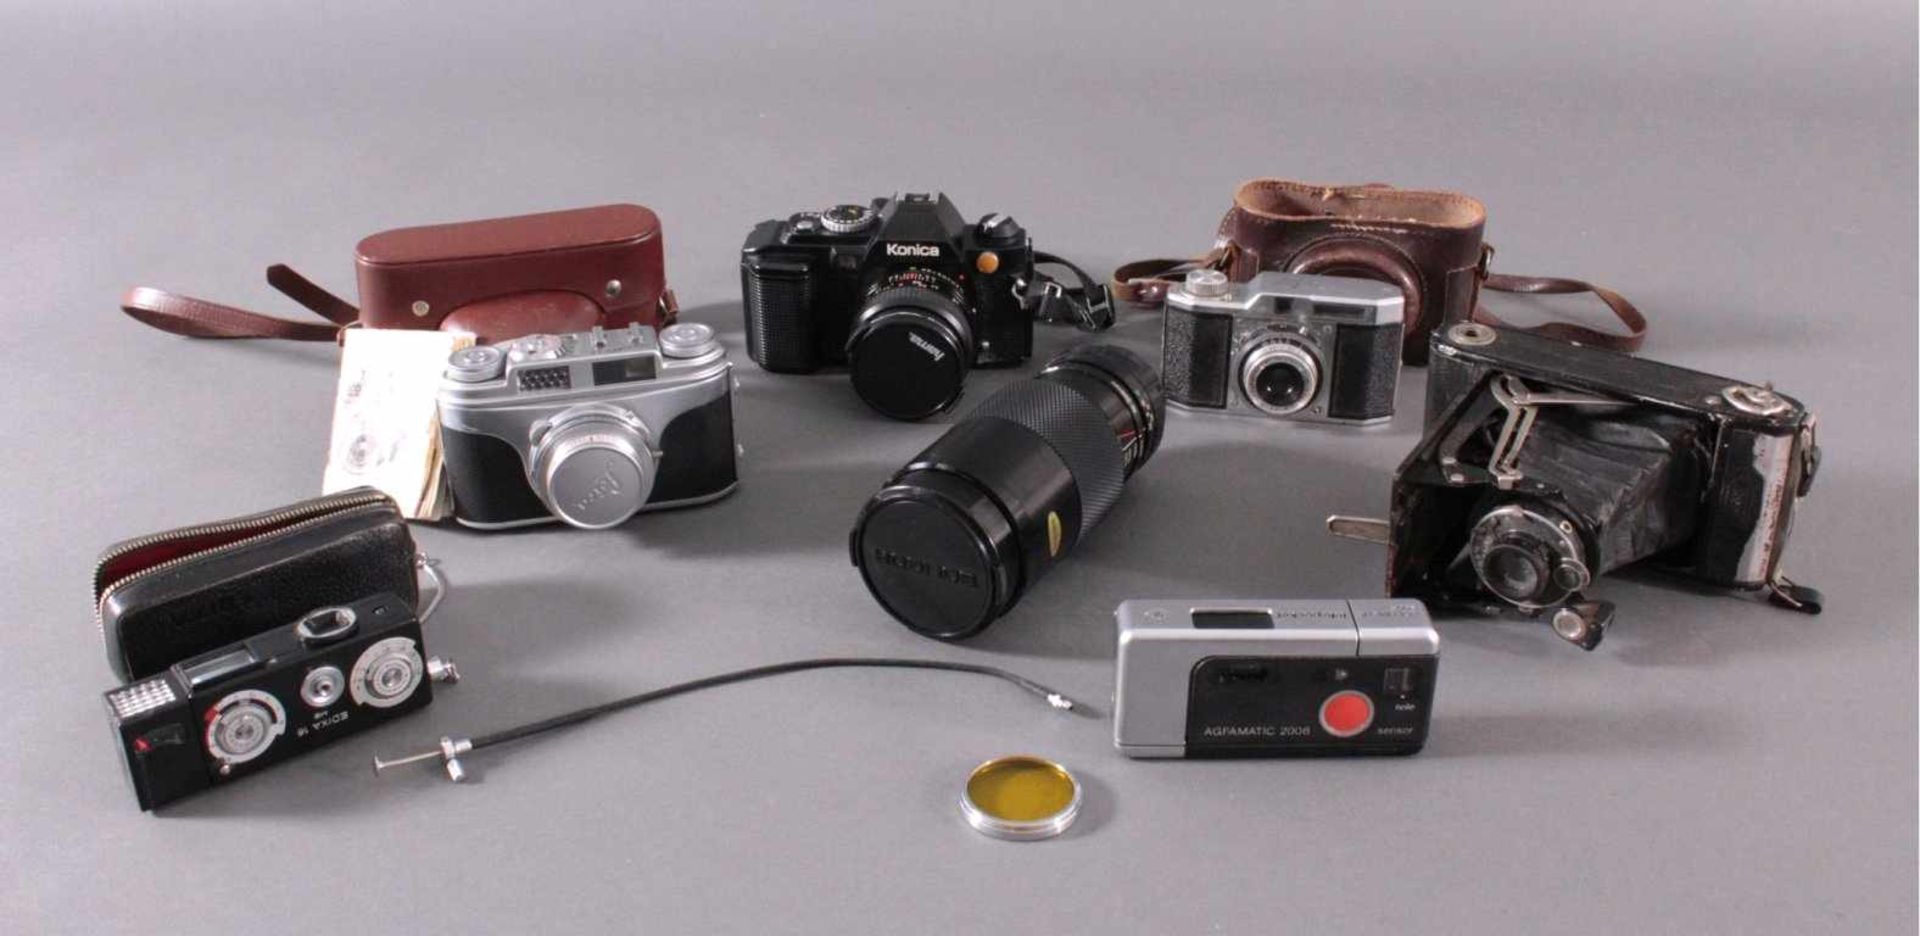 Sechs Kameras mit Zubehör1x Konika FS1. 1979, mit Objektiv Konika Hexaon AR 50mmF1.4, Objektiv